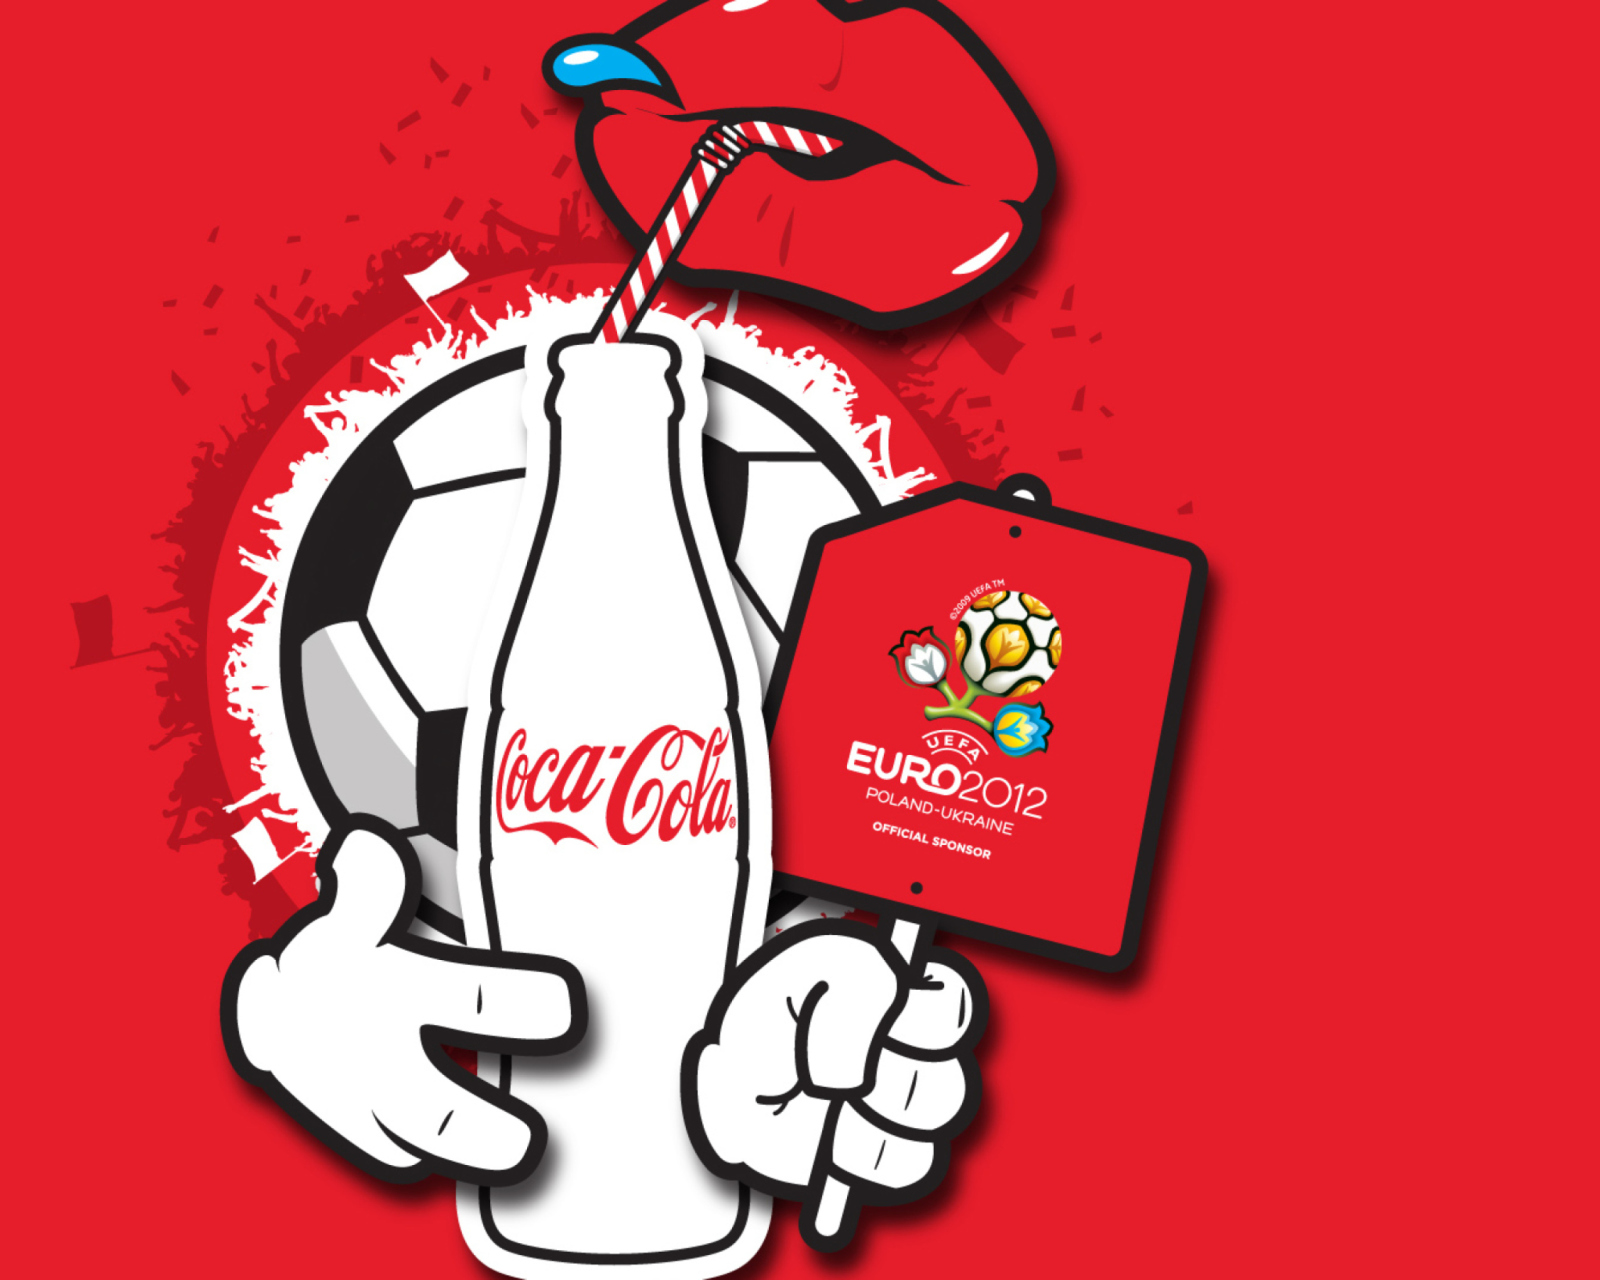 Das Coca Cola & Euro 2012 full hd Wallpaper 1600x1280